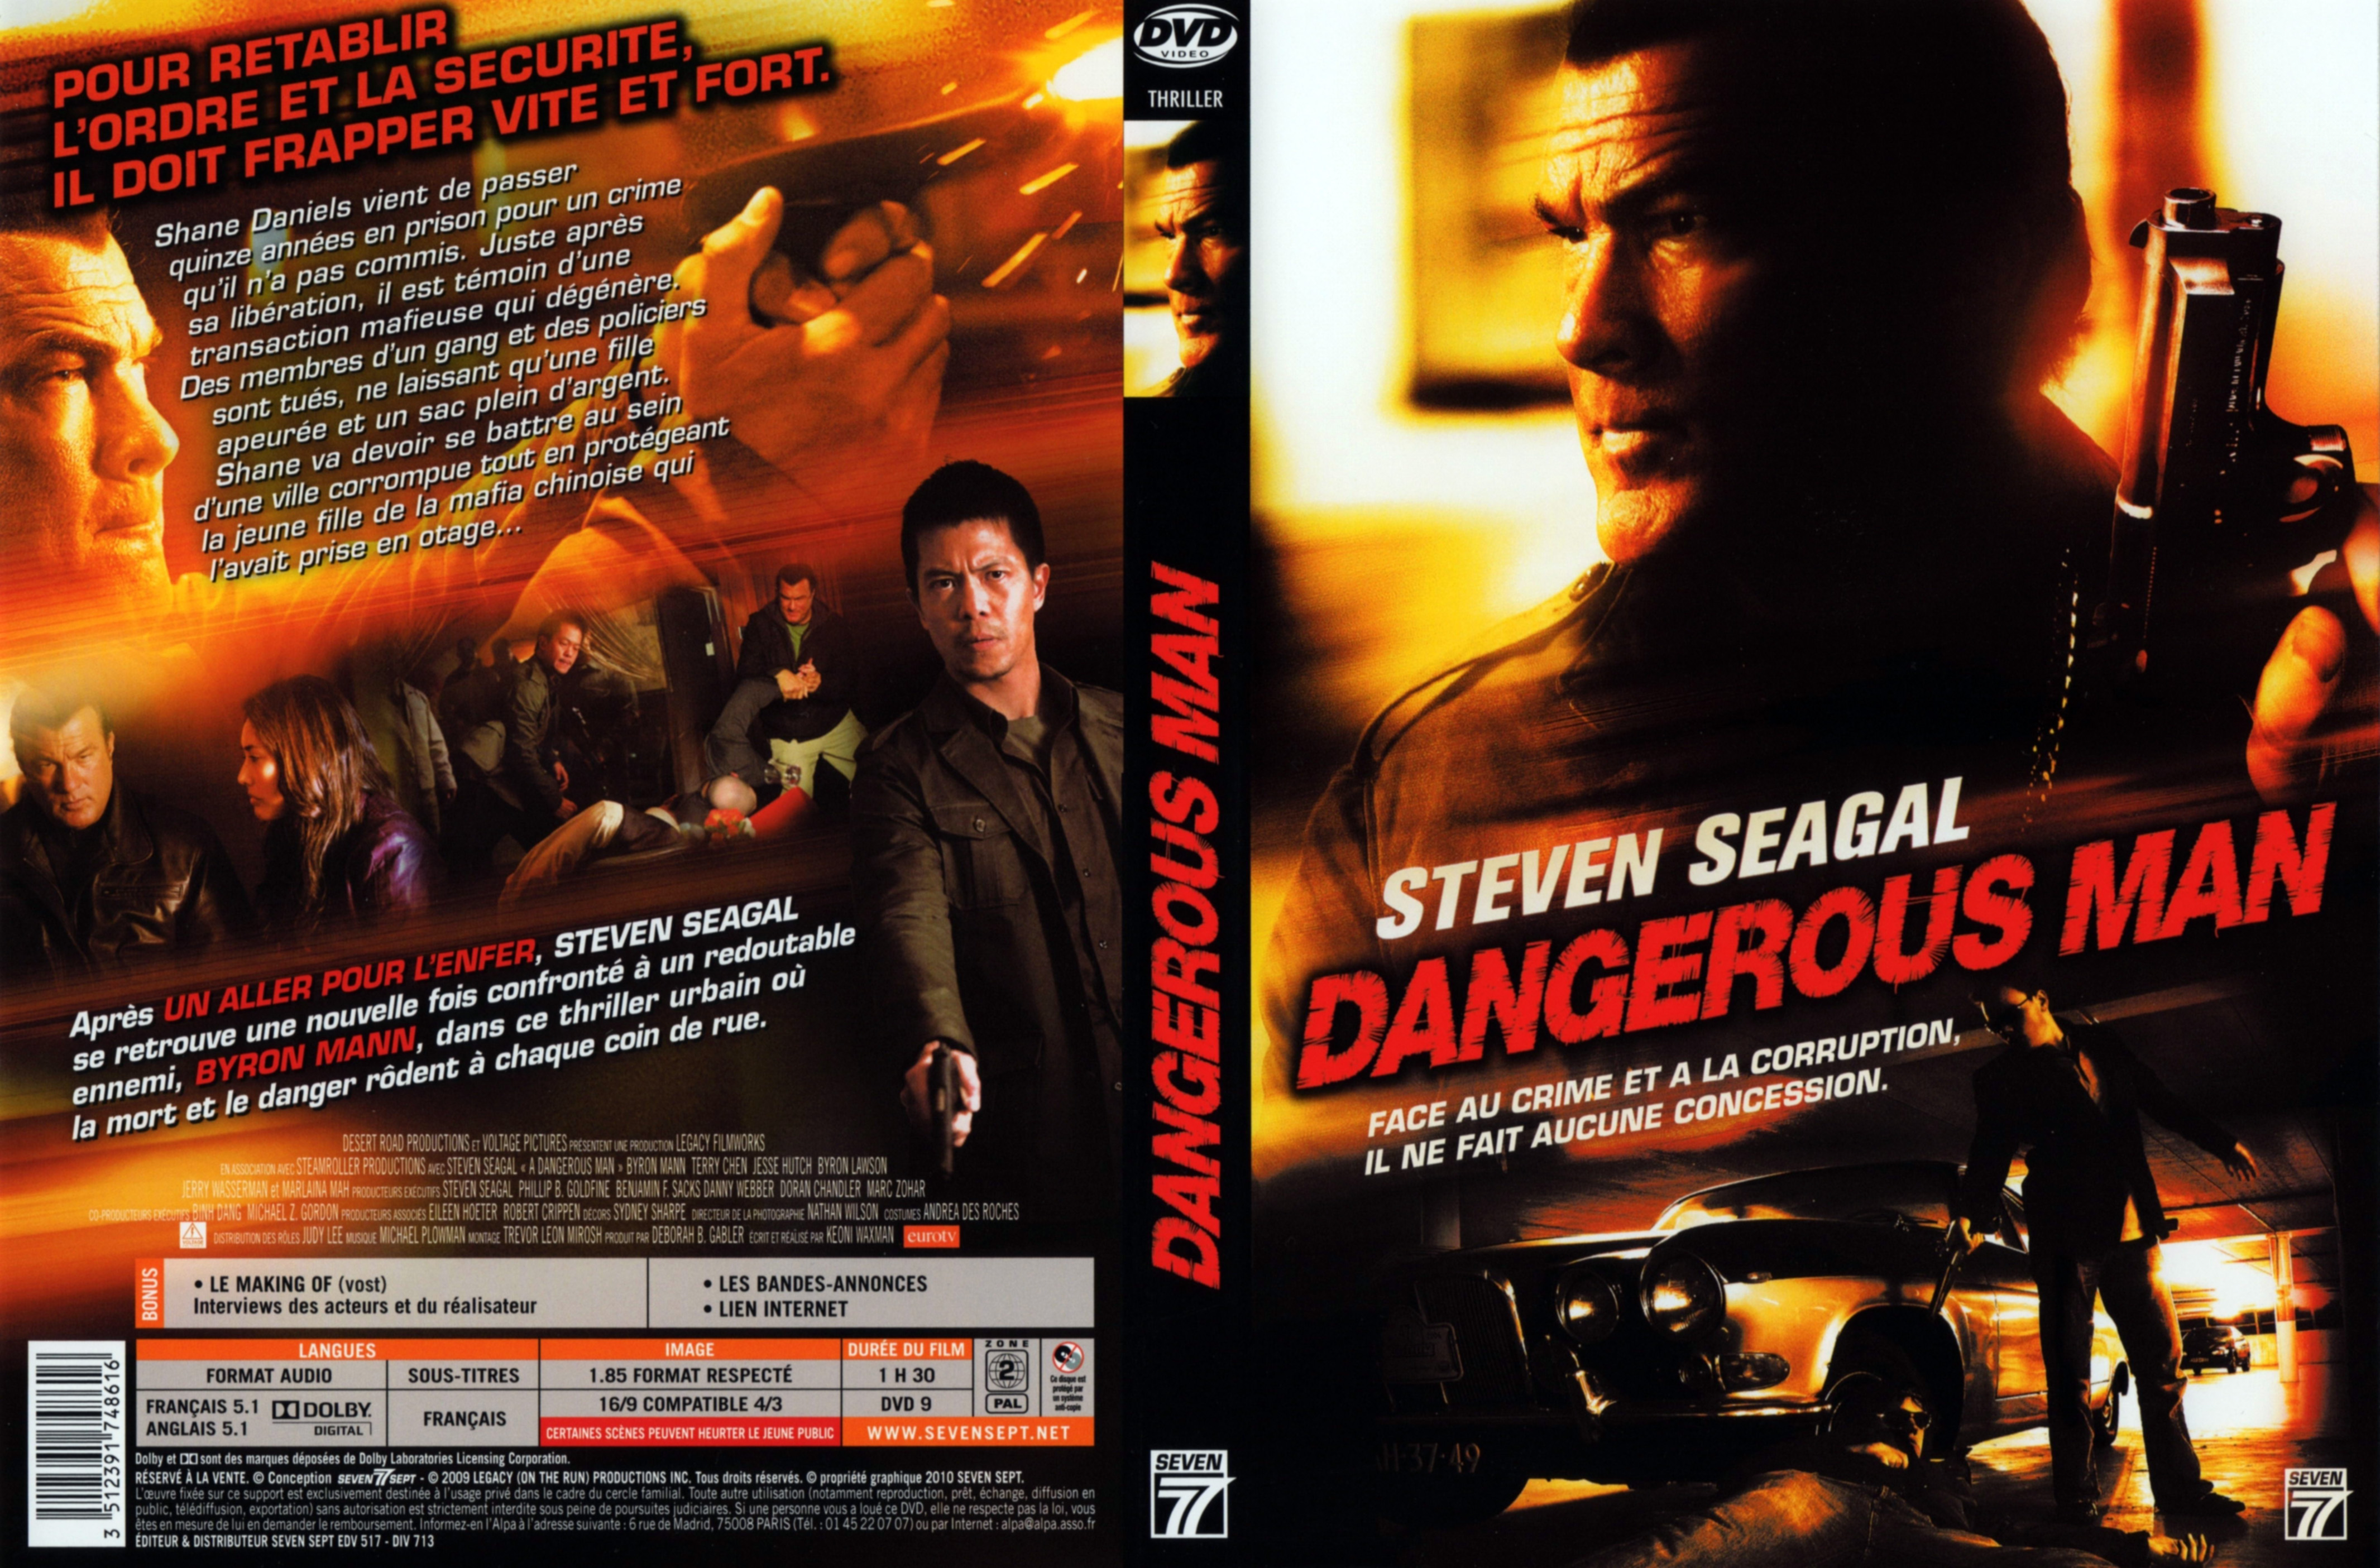 Jaquette DVD Dangerous man